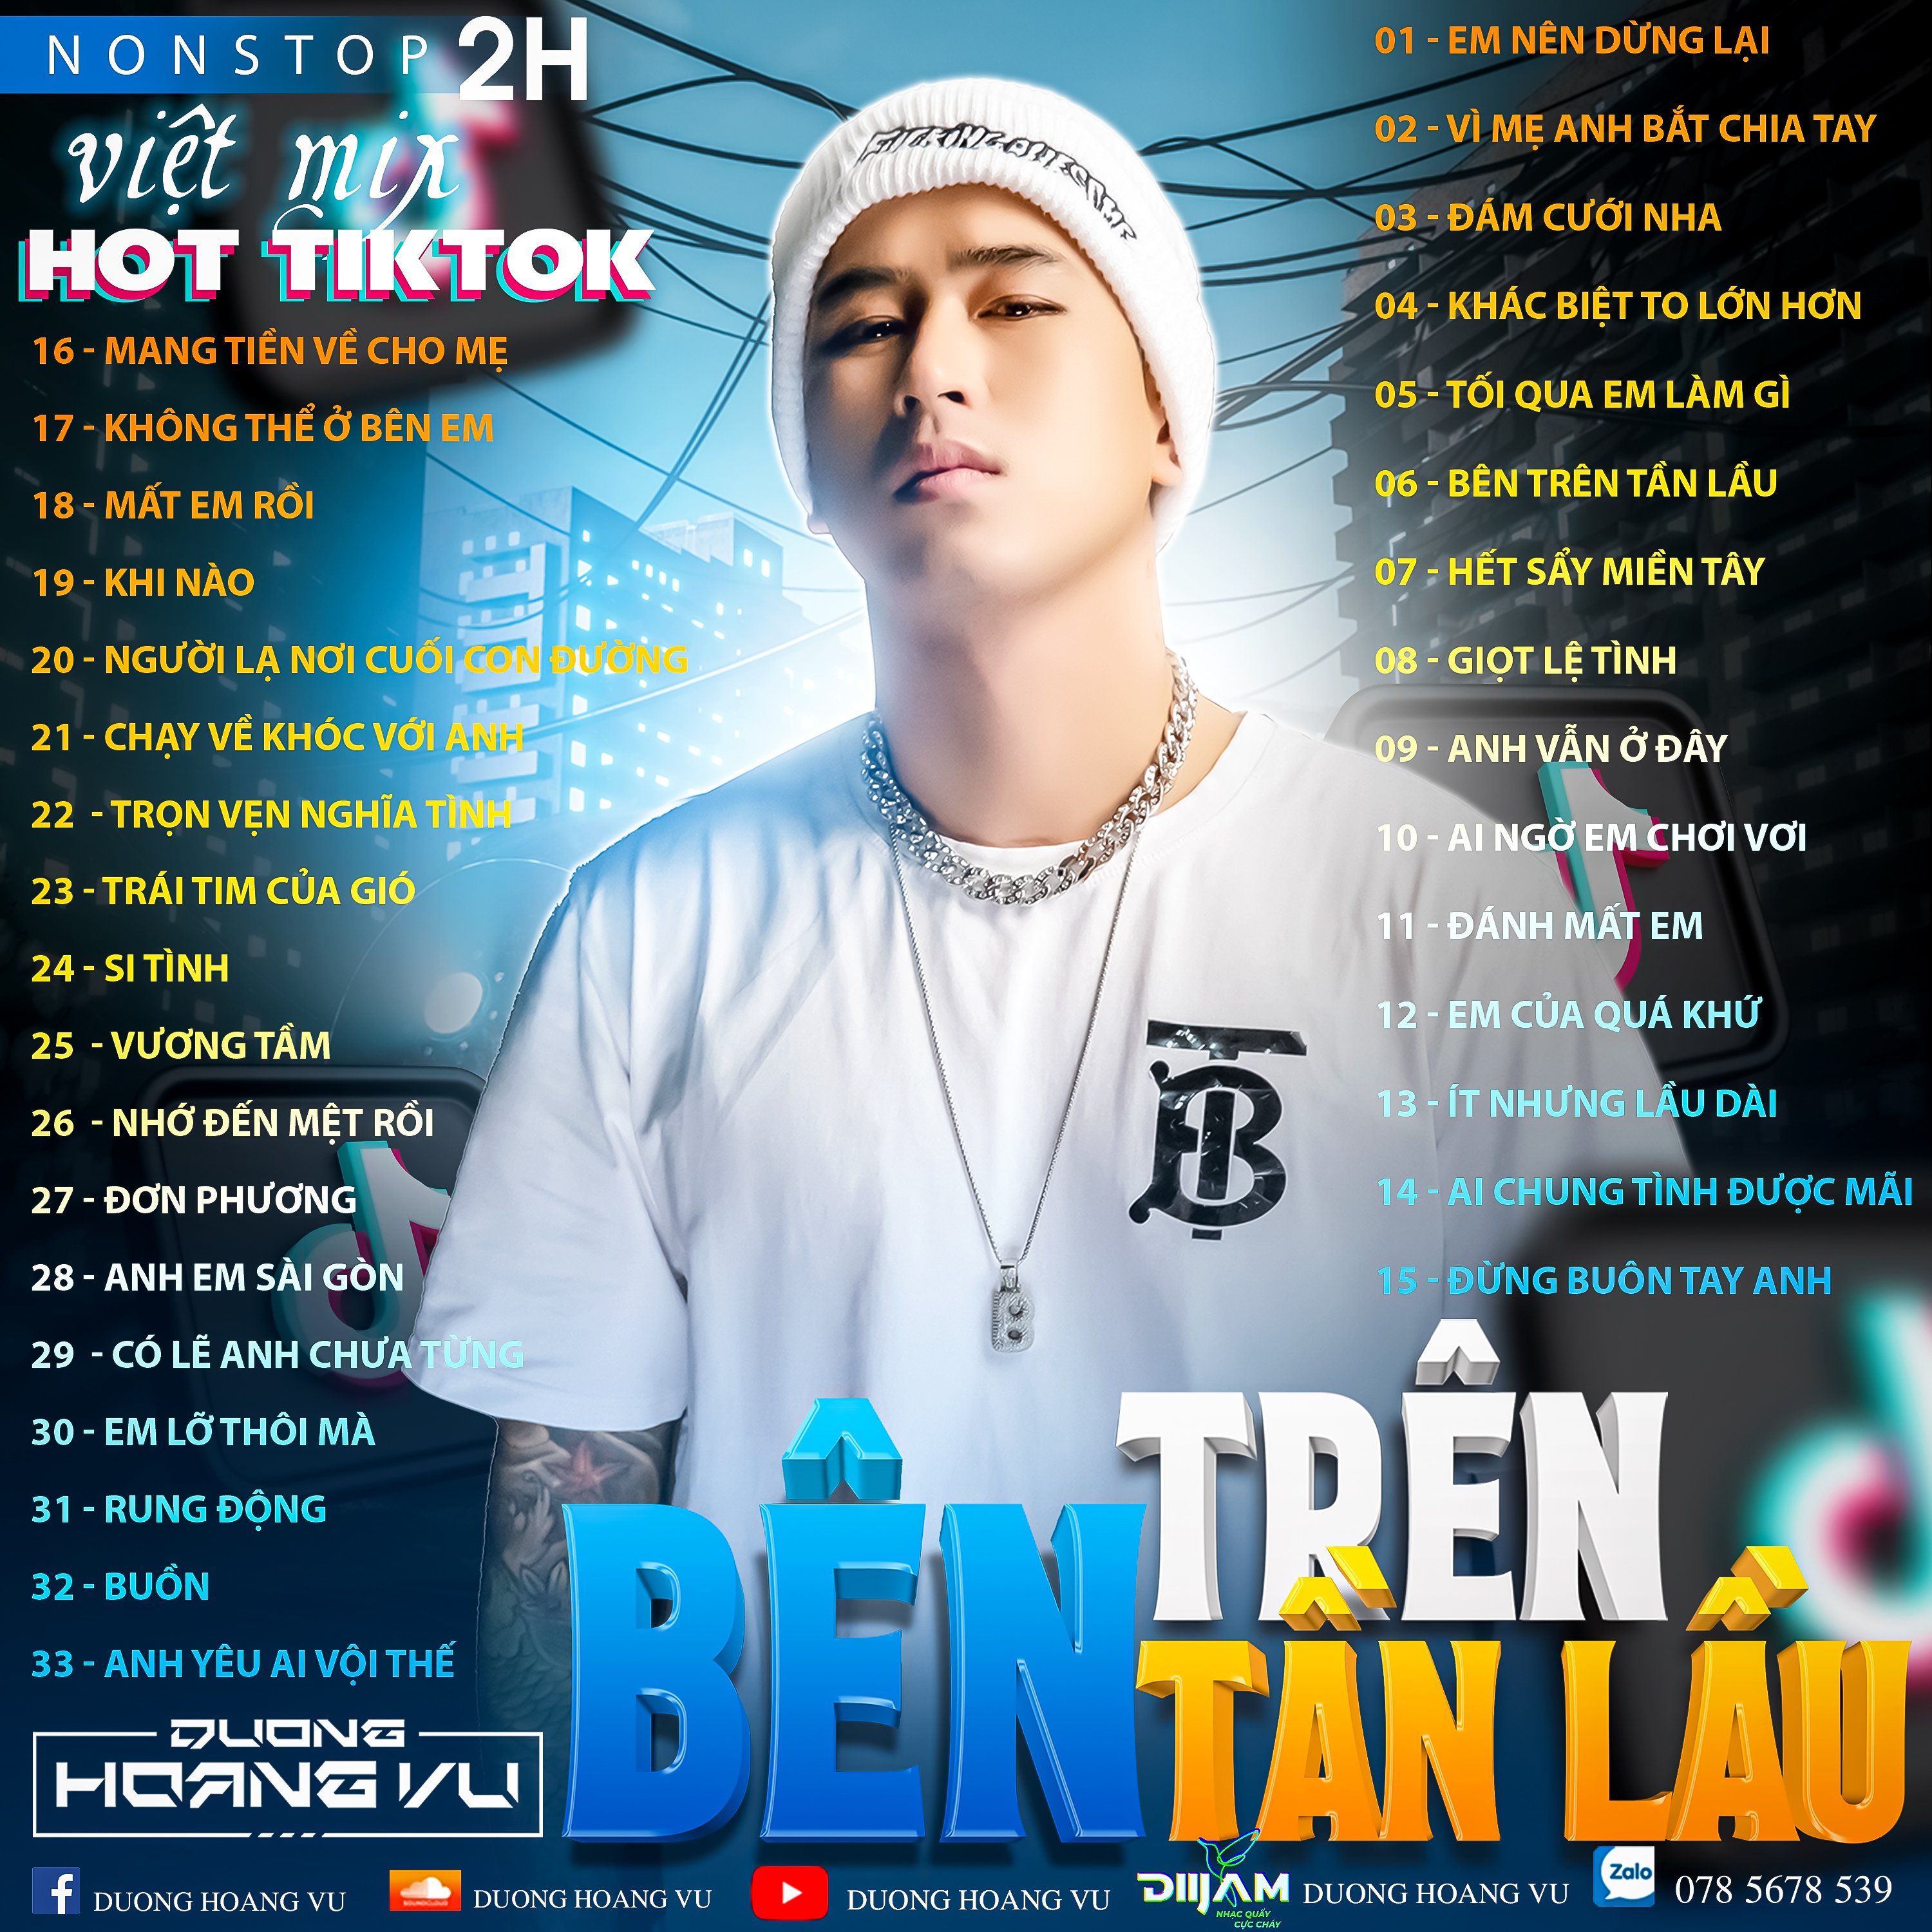 تحميل (Demo ) Nst Việt Mix Hot tiktok 2h - 2022 - DJ Dương Hoàng Vũ Mix Mua Full IB Zalo 078.5678.539